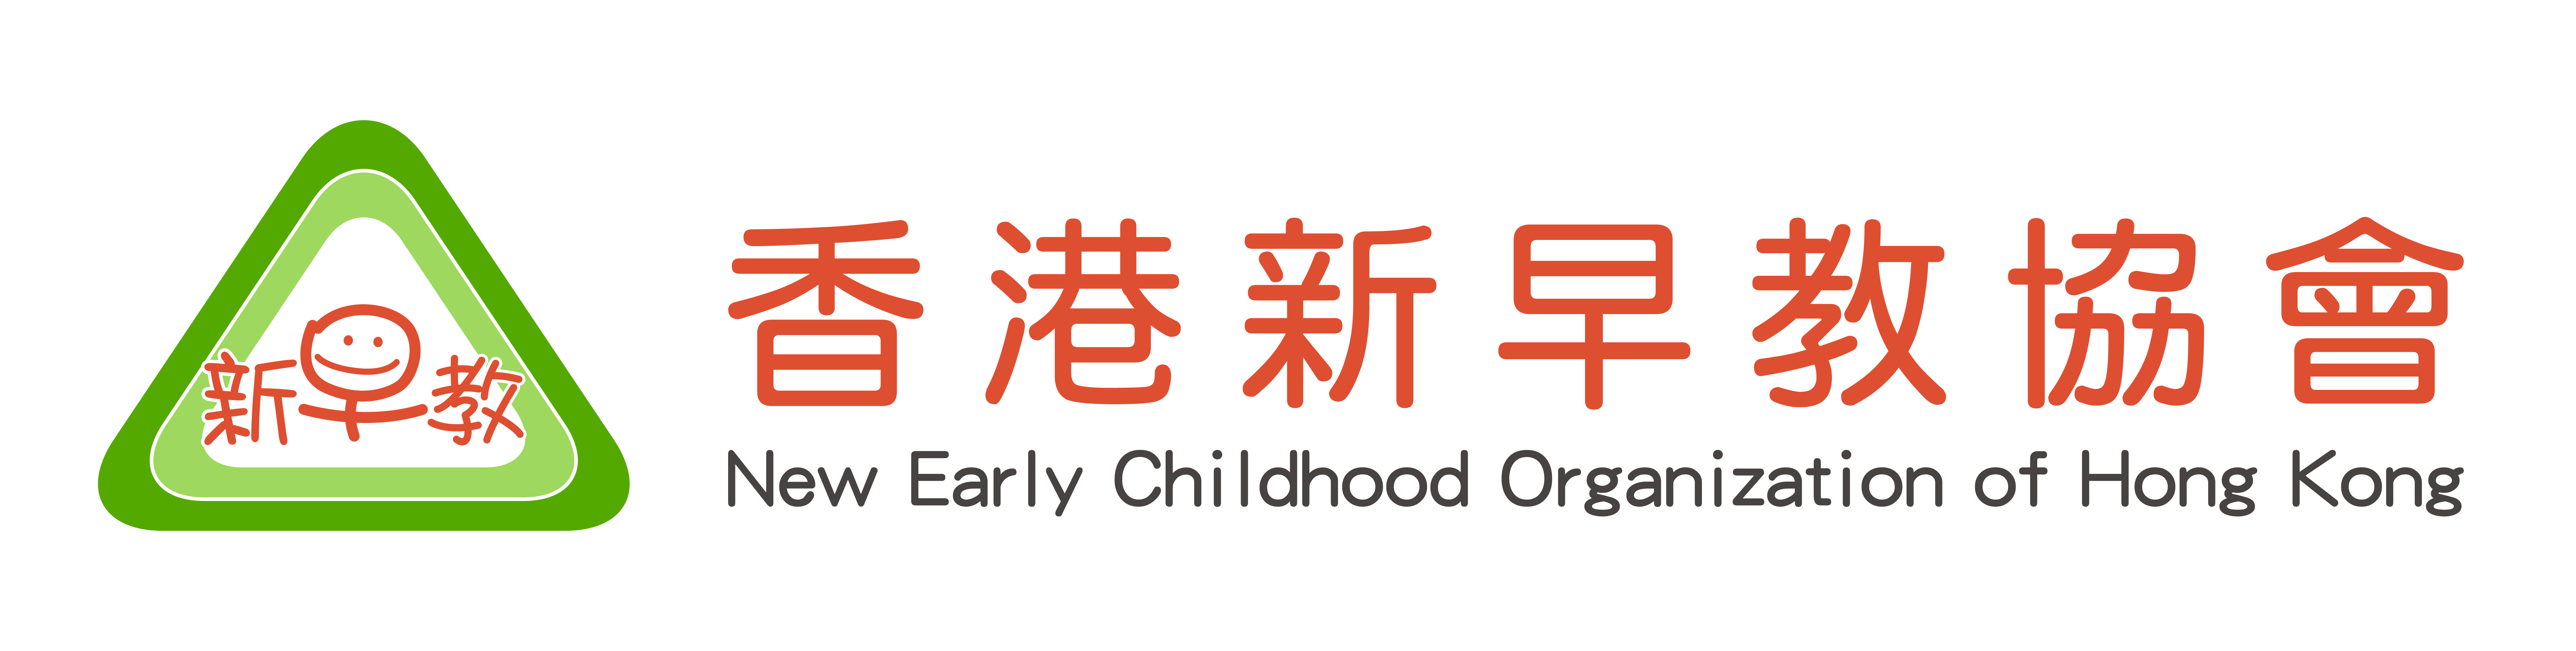 香港新早教協會 | New Early Childhood Organization of Hong Kong